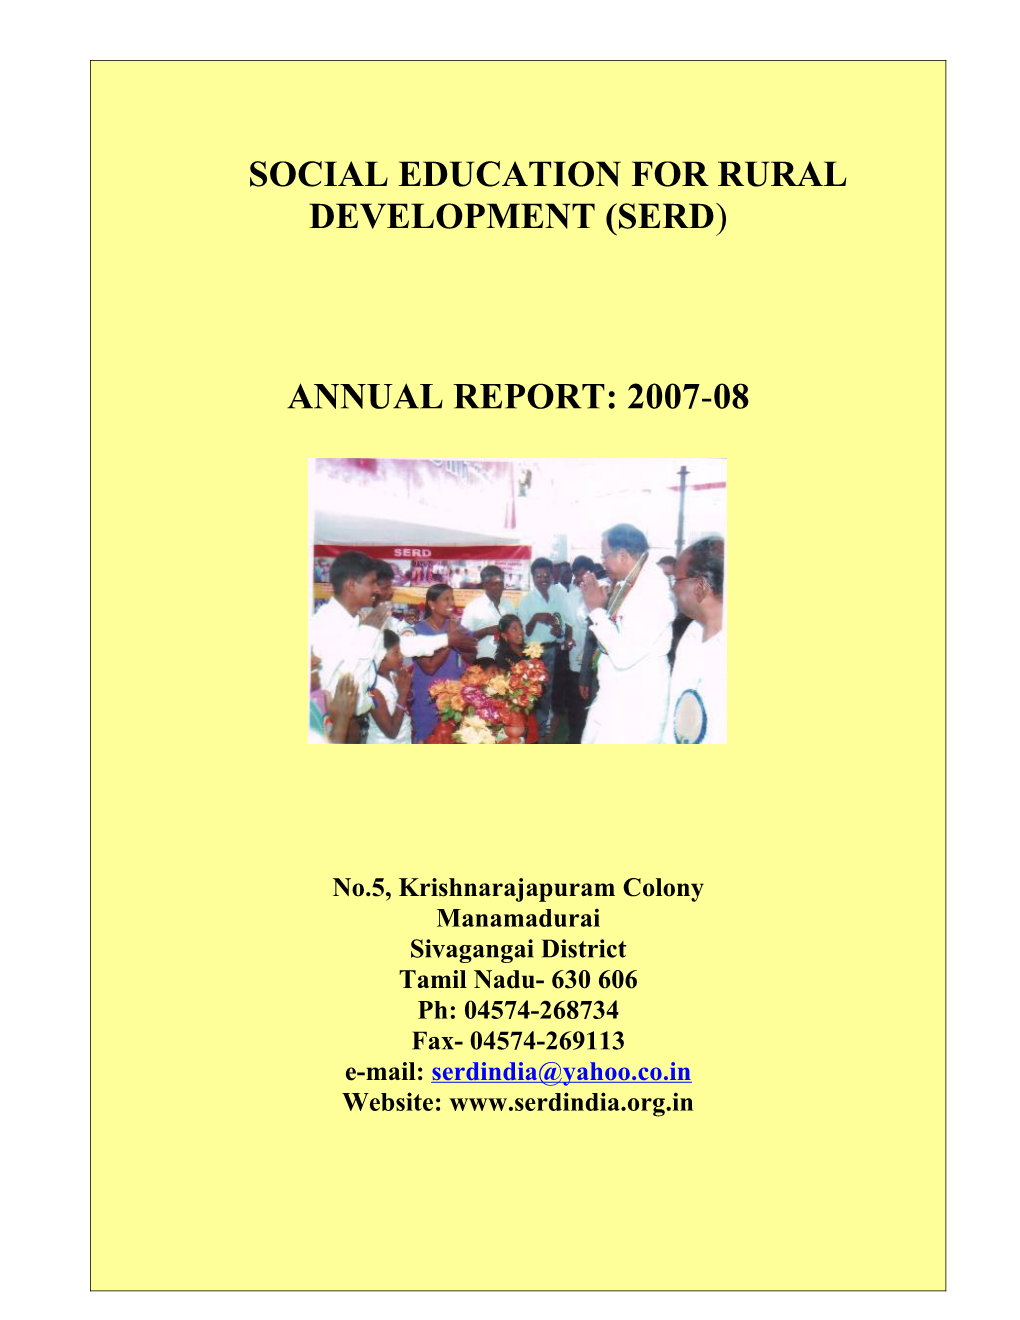 Social Education for Rural Development (SERD)